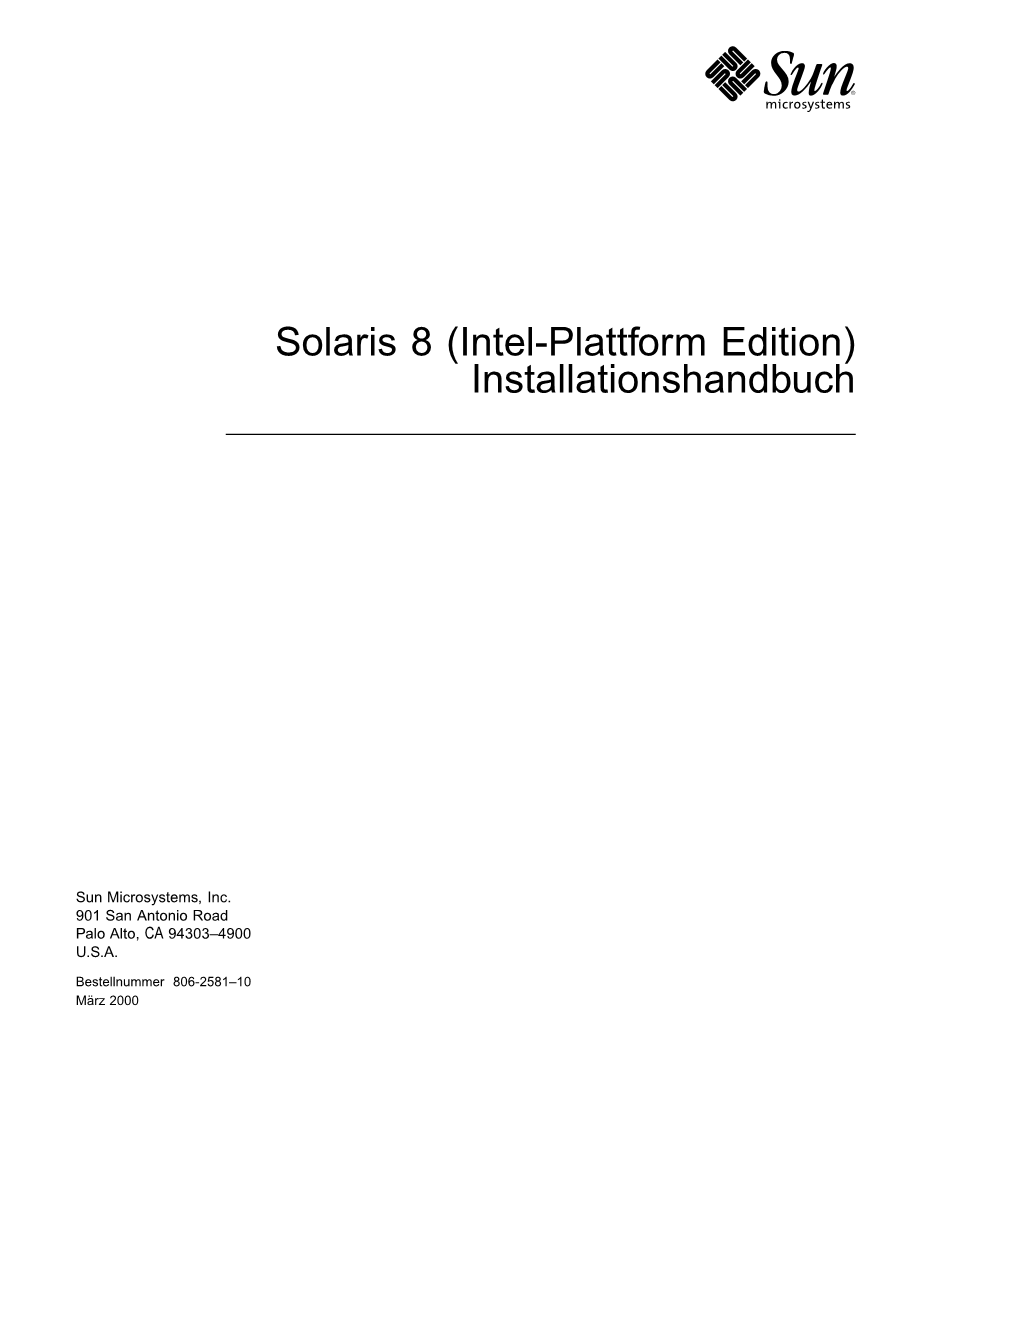 Solaris 8 (Intel-Plattform Edition) Installationshandbuch